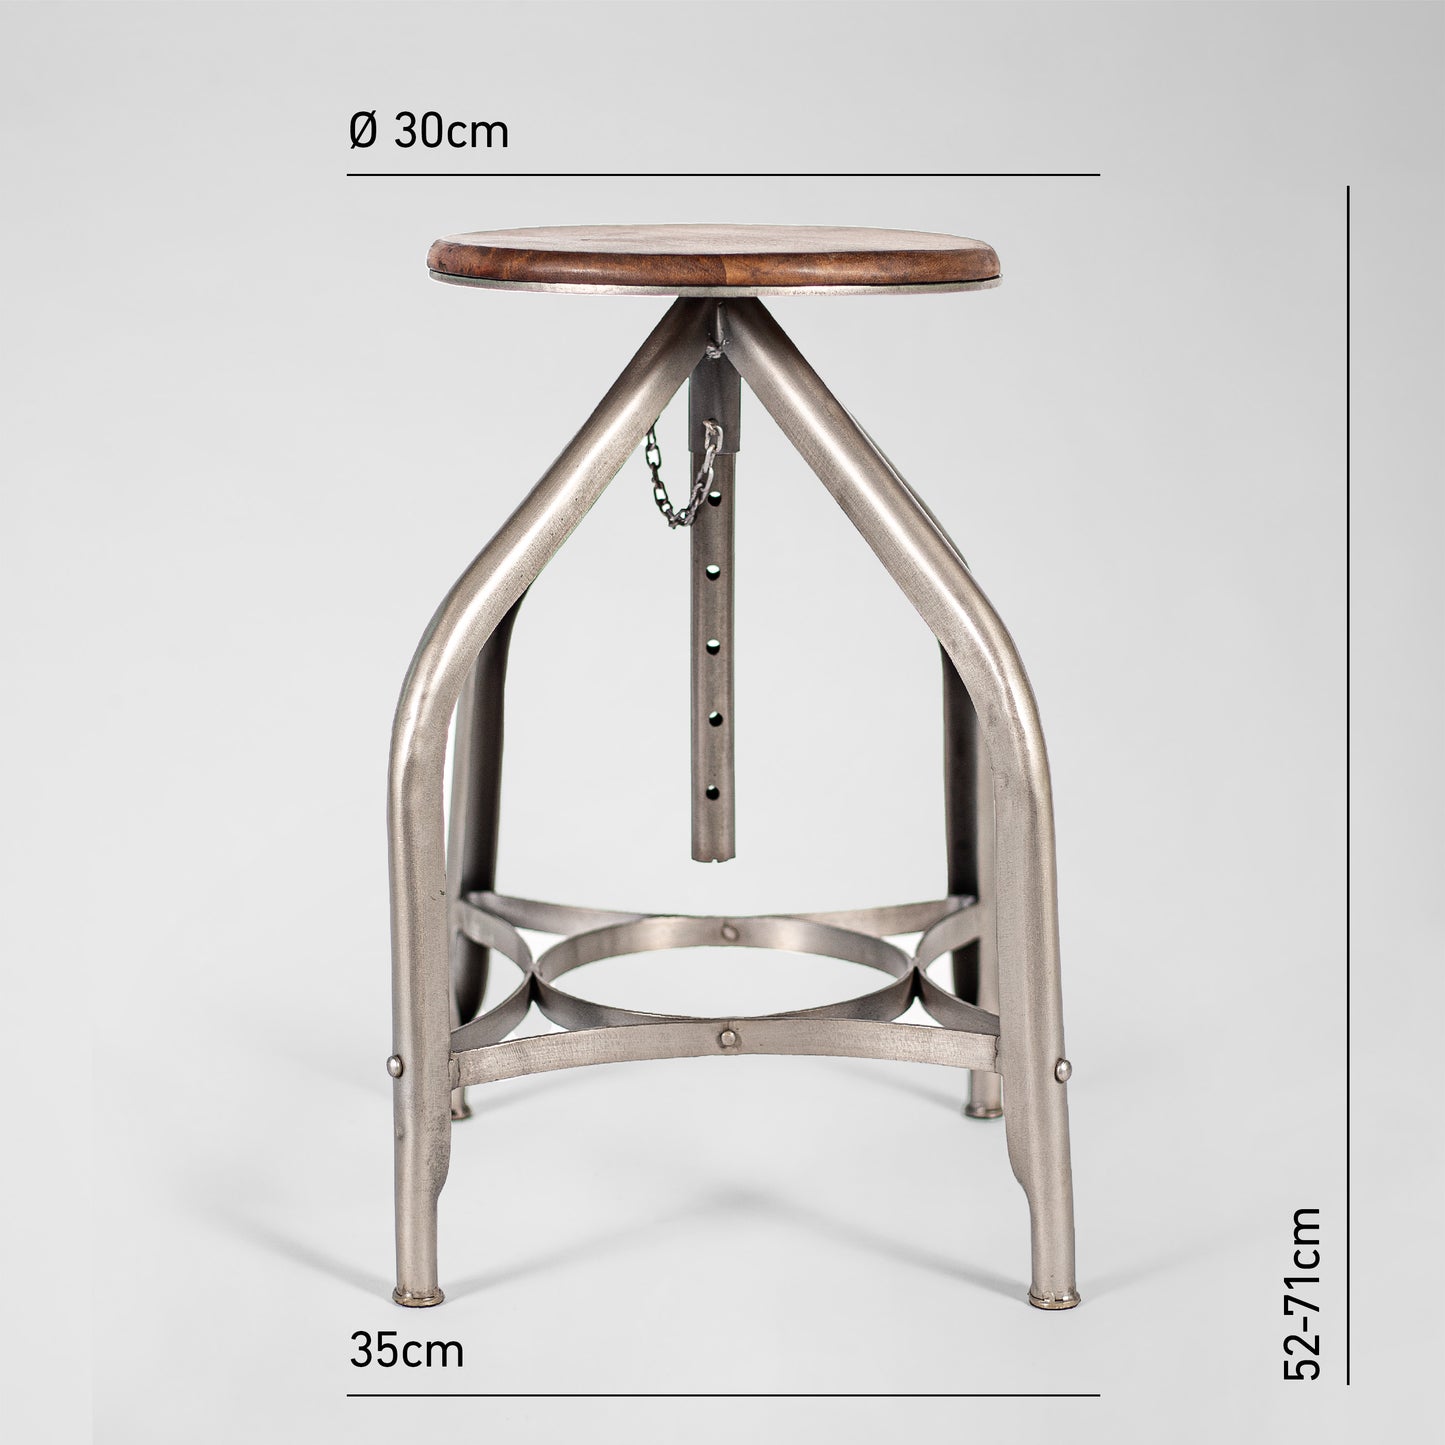 Humphrey Pump – Handmade Industrie-Design Hocker aus Metall mit Holzsitz in silber